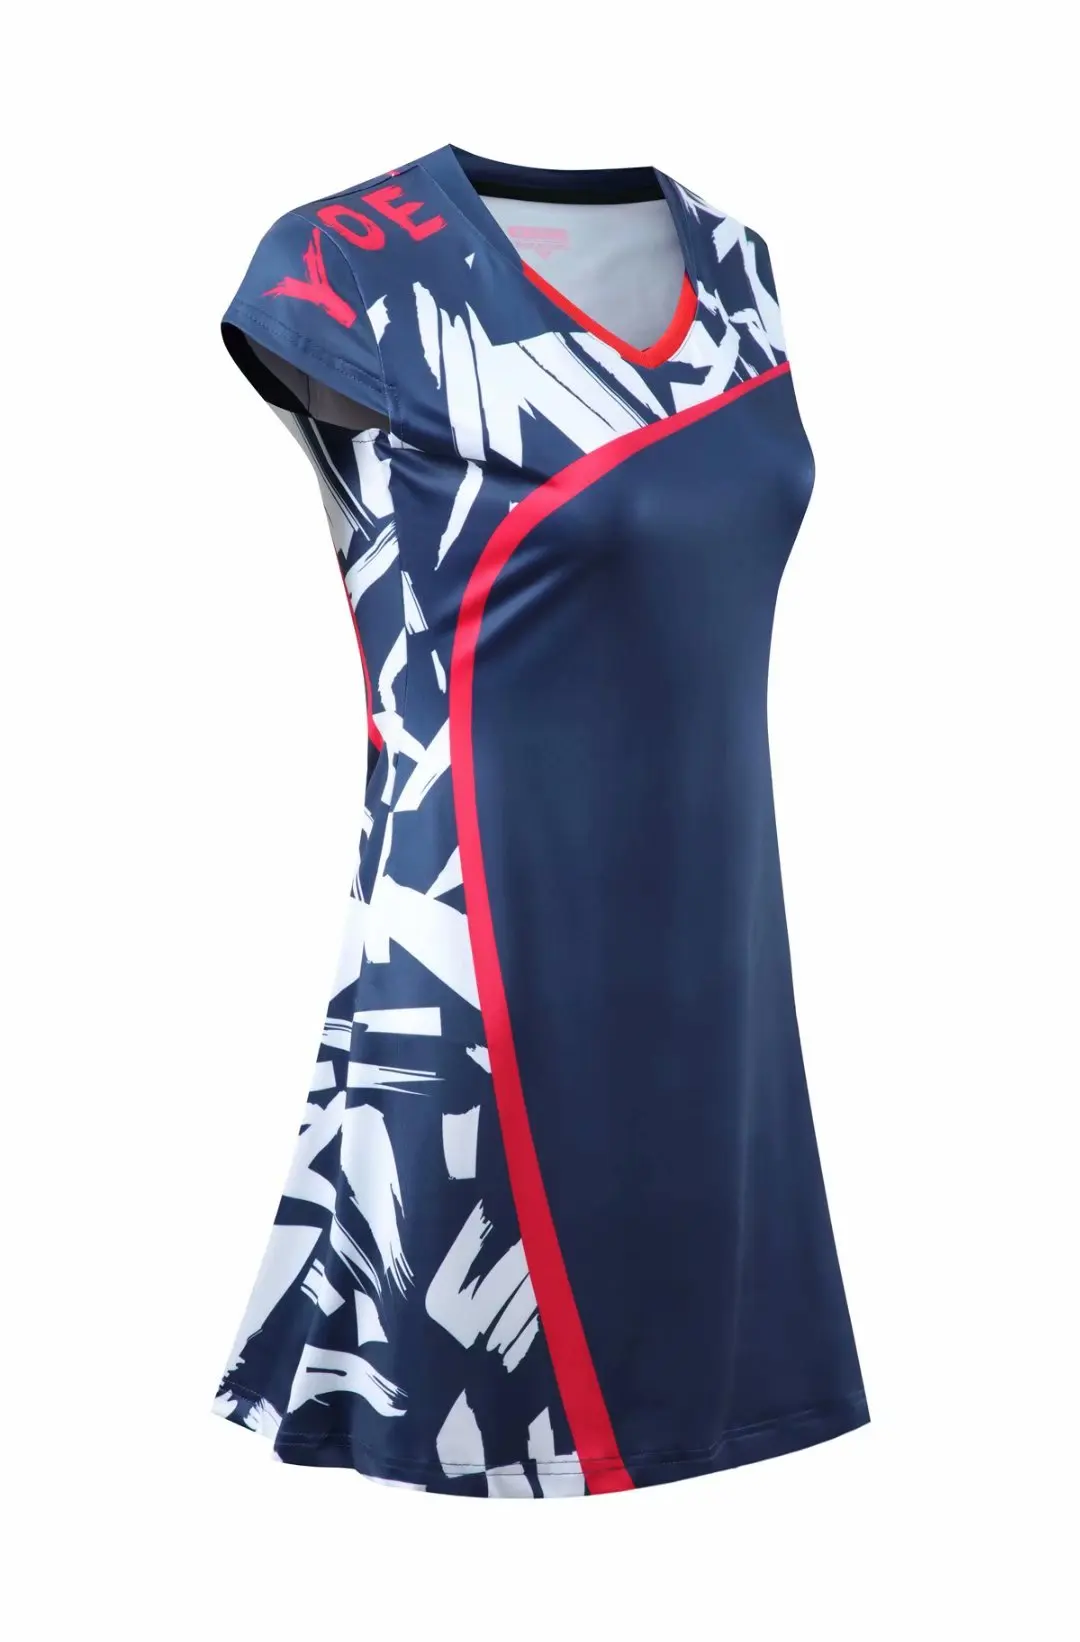 Женское слитное быстросохнущее Спортивное платье Sidiou с коротким рукавом для тренировок, бадминтона, гольфа, Легкое приталенное теннисное платье